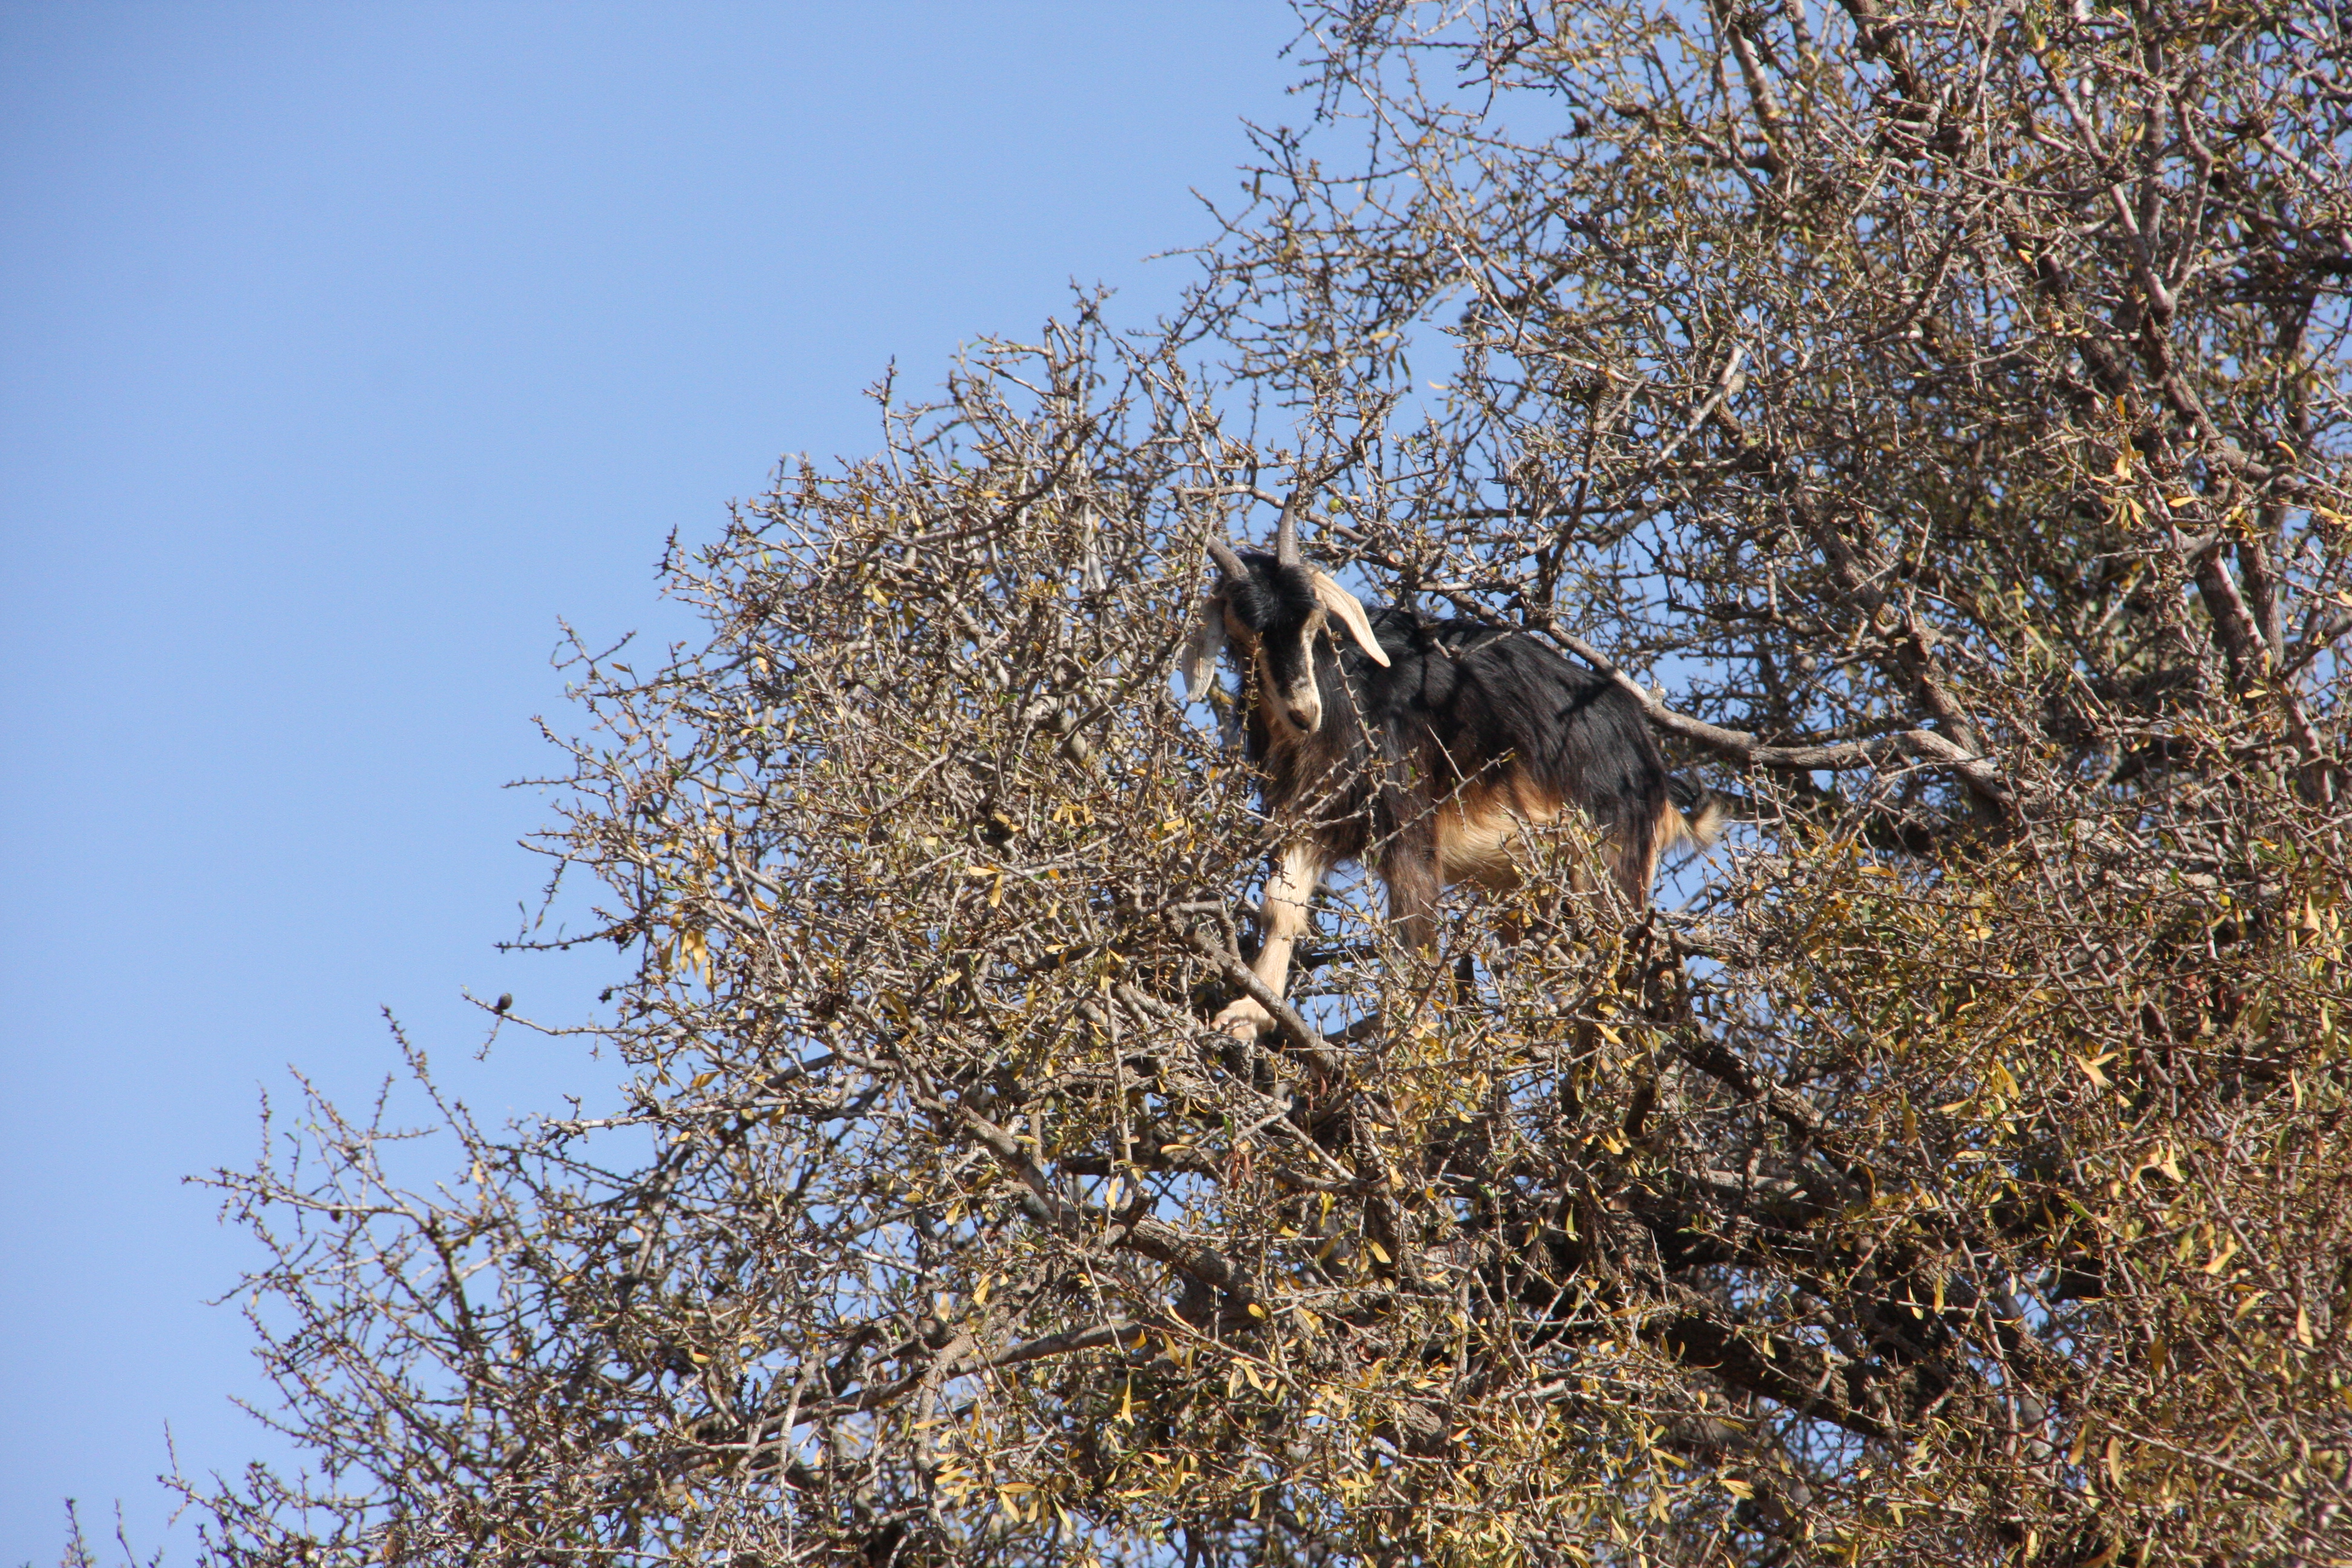 Goat in an argan tree in Morocco